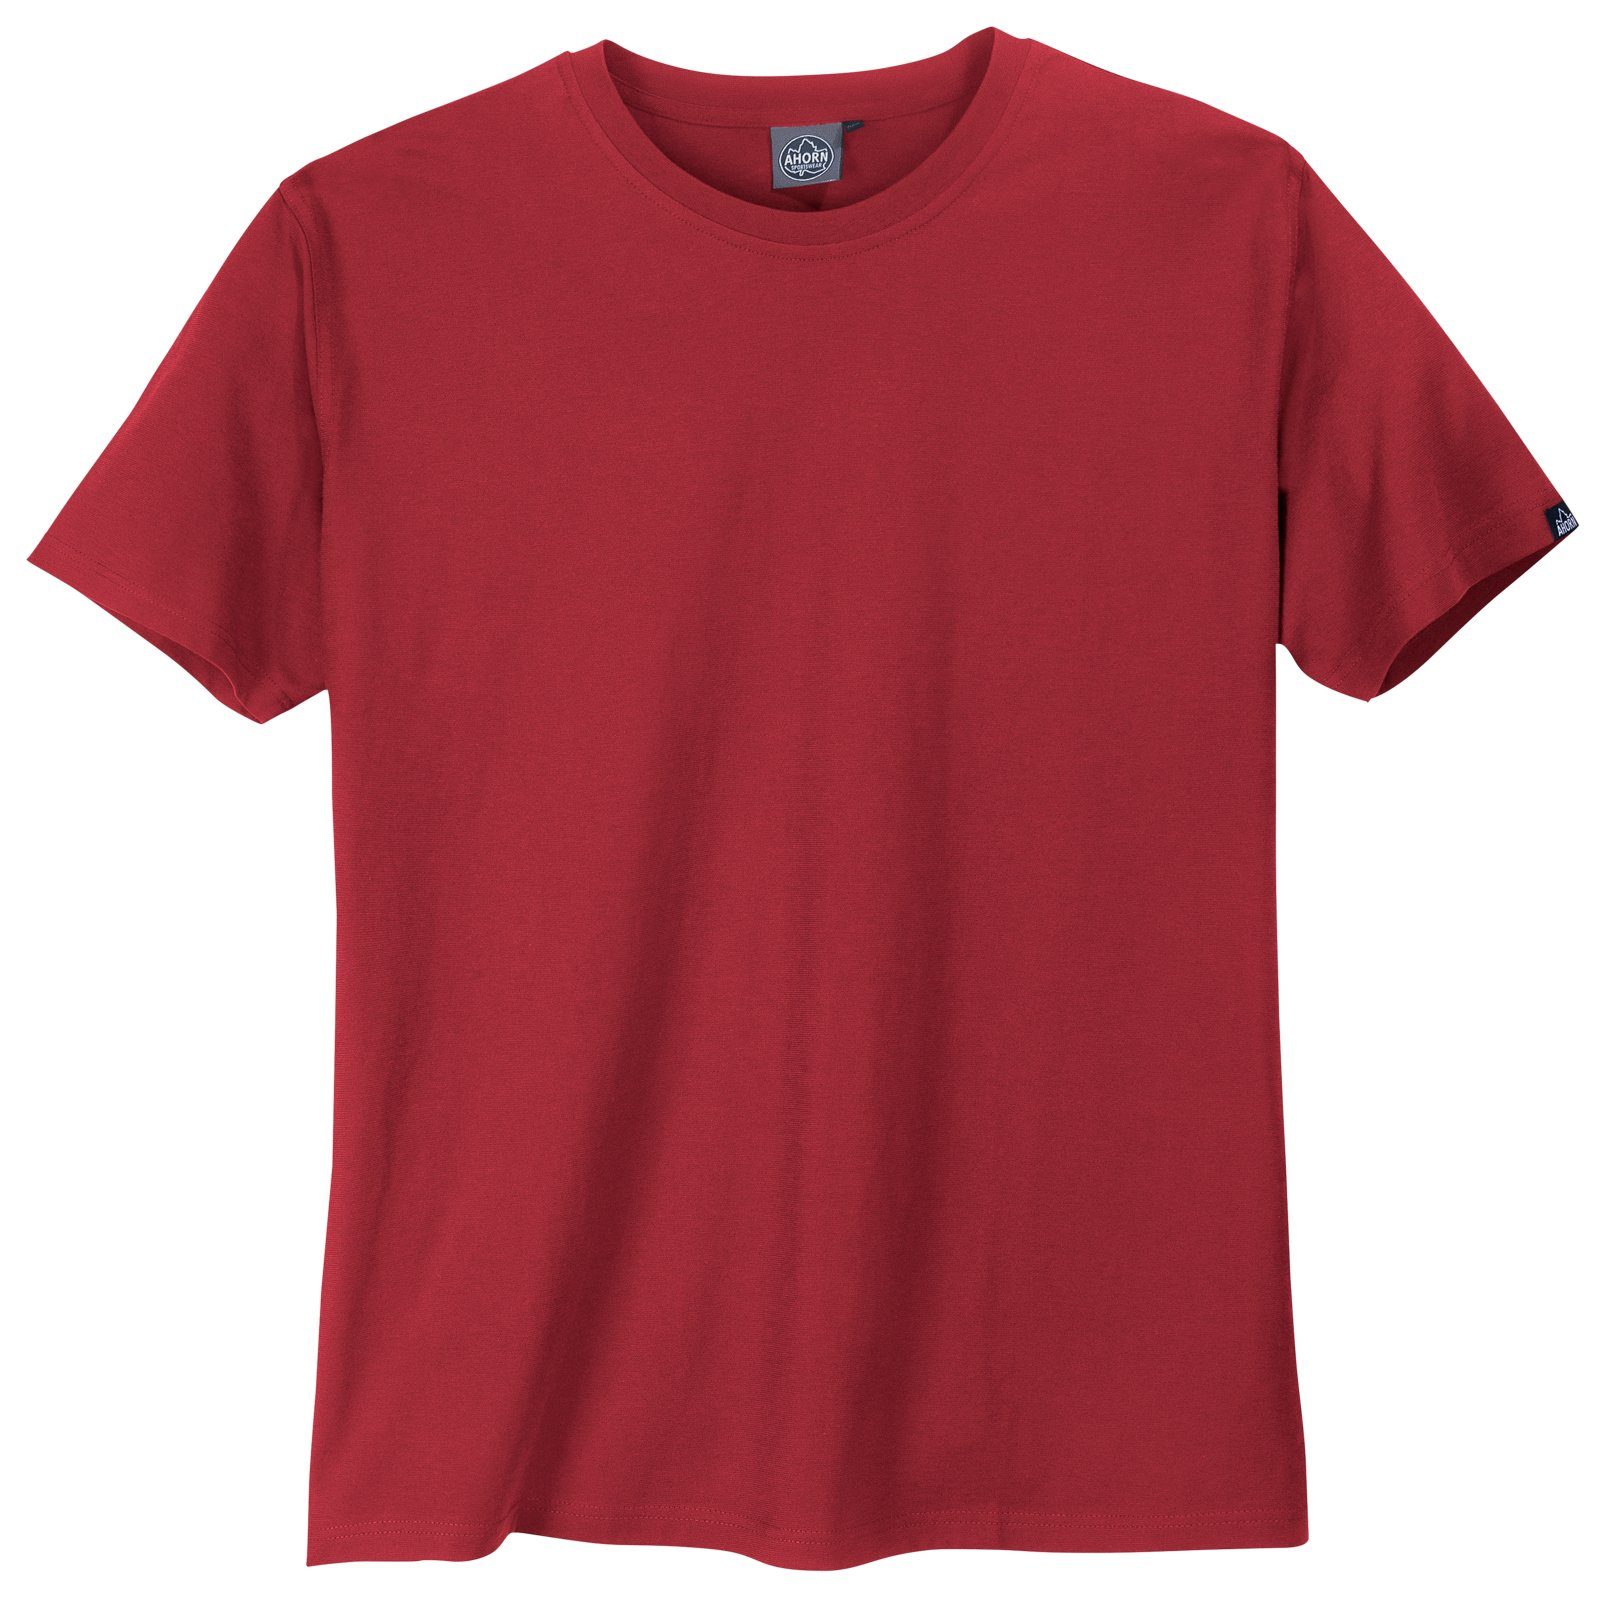 AHORN SPORTSWEAR Rundhalsshirt Große Größen Basic T-Shirt Rundhals rot Ahorn Sportswear